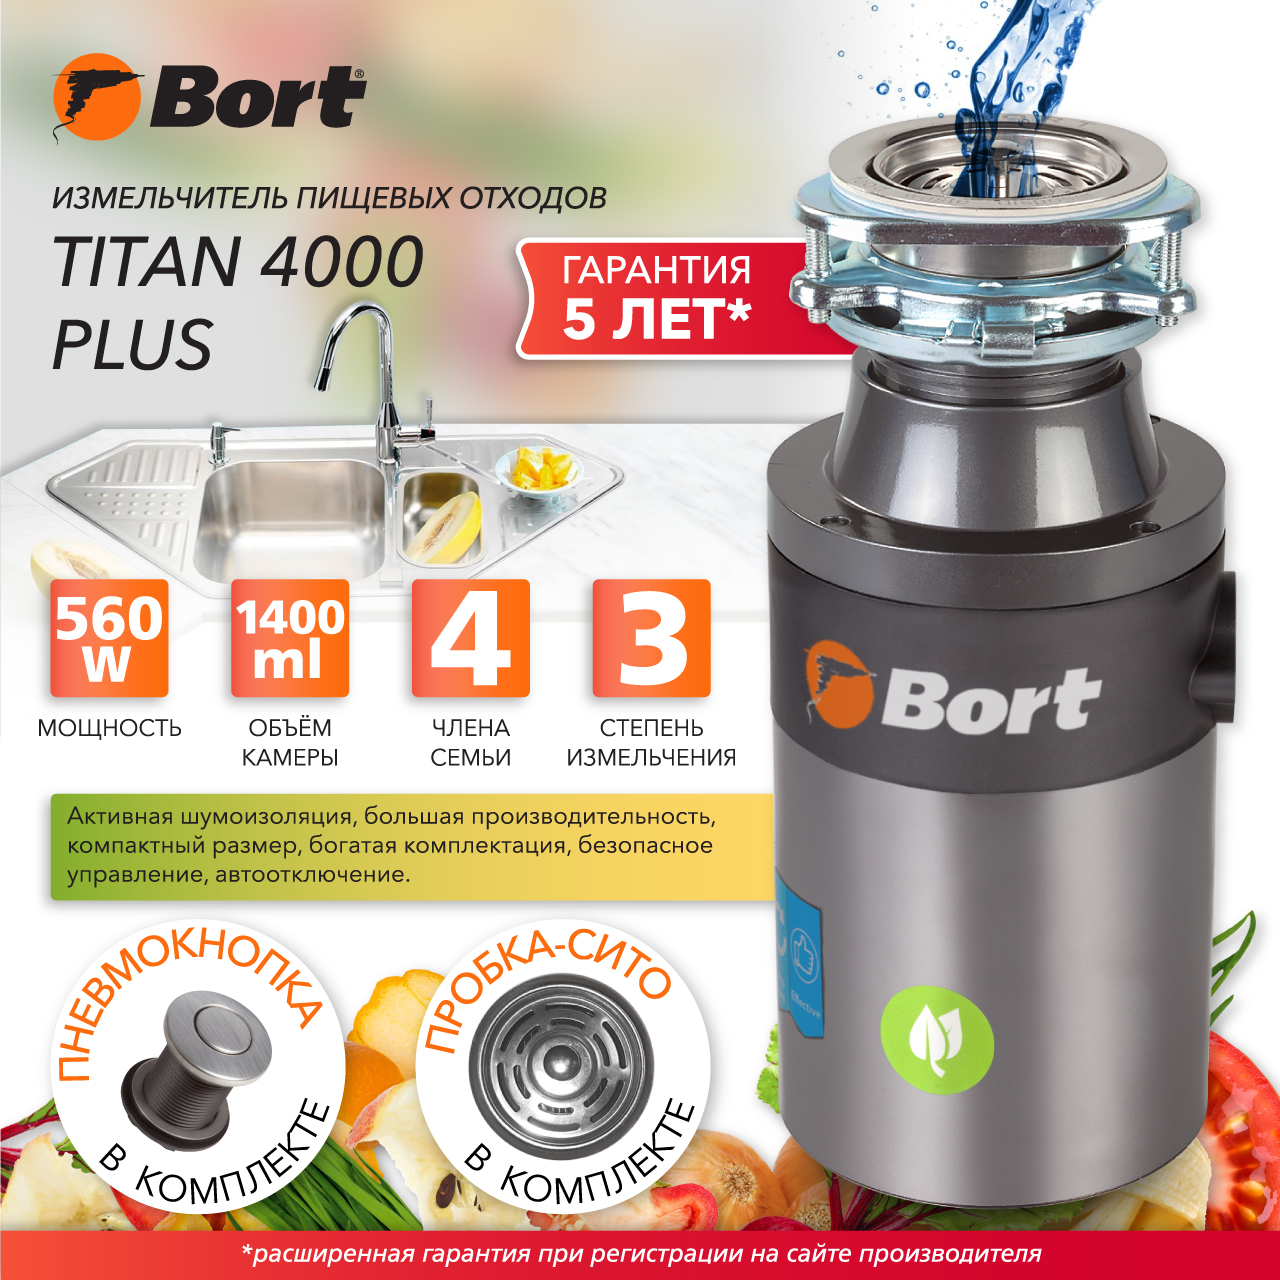 Измельчитель пищевых отходов Bort TITAN 4000 PLUS (91275776) серебристый измельчитель пищевых отходов bort titan 5000 control 93410259 серебристый